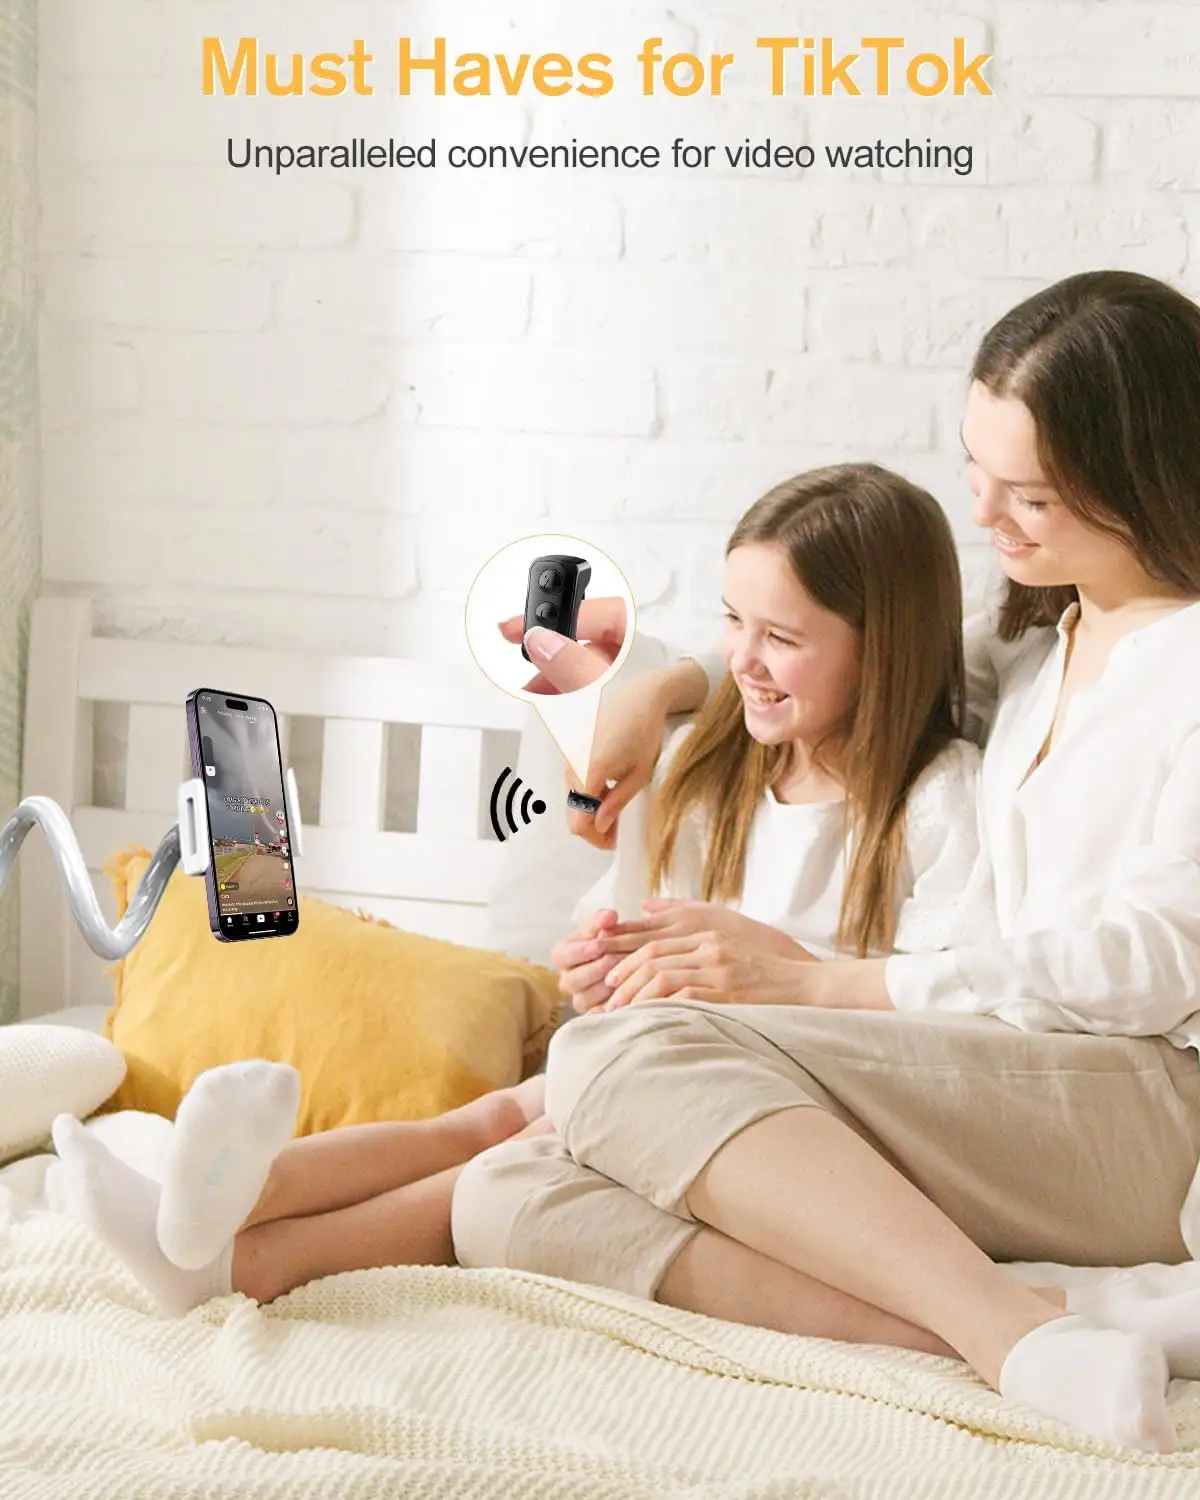 Vente chaude sans fil Bluetooth compatible Selfie paresseux pour téléphone portable 10M contrôleur de Transmission D01 Tiktok télécommande anneau